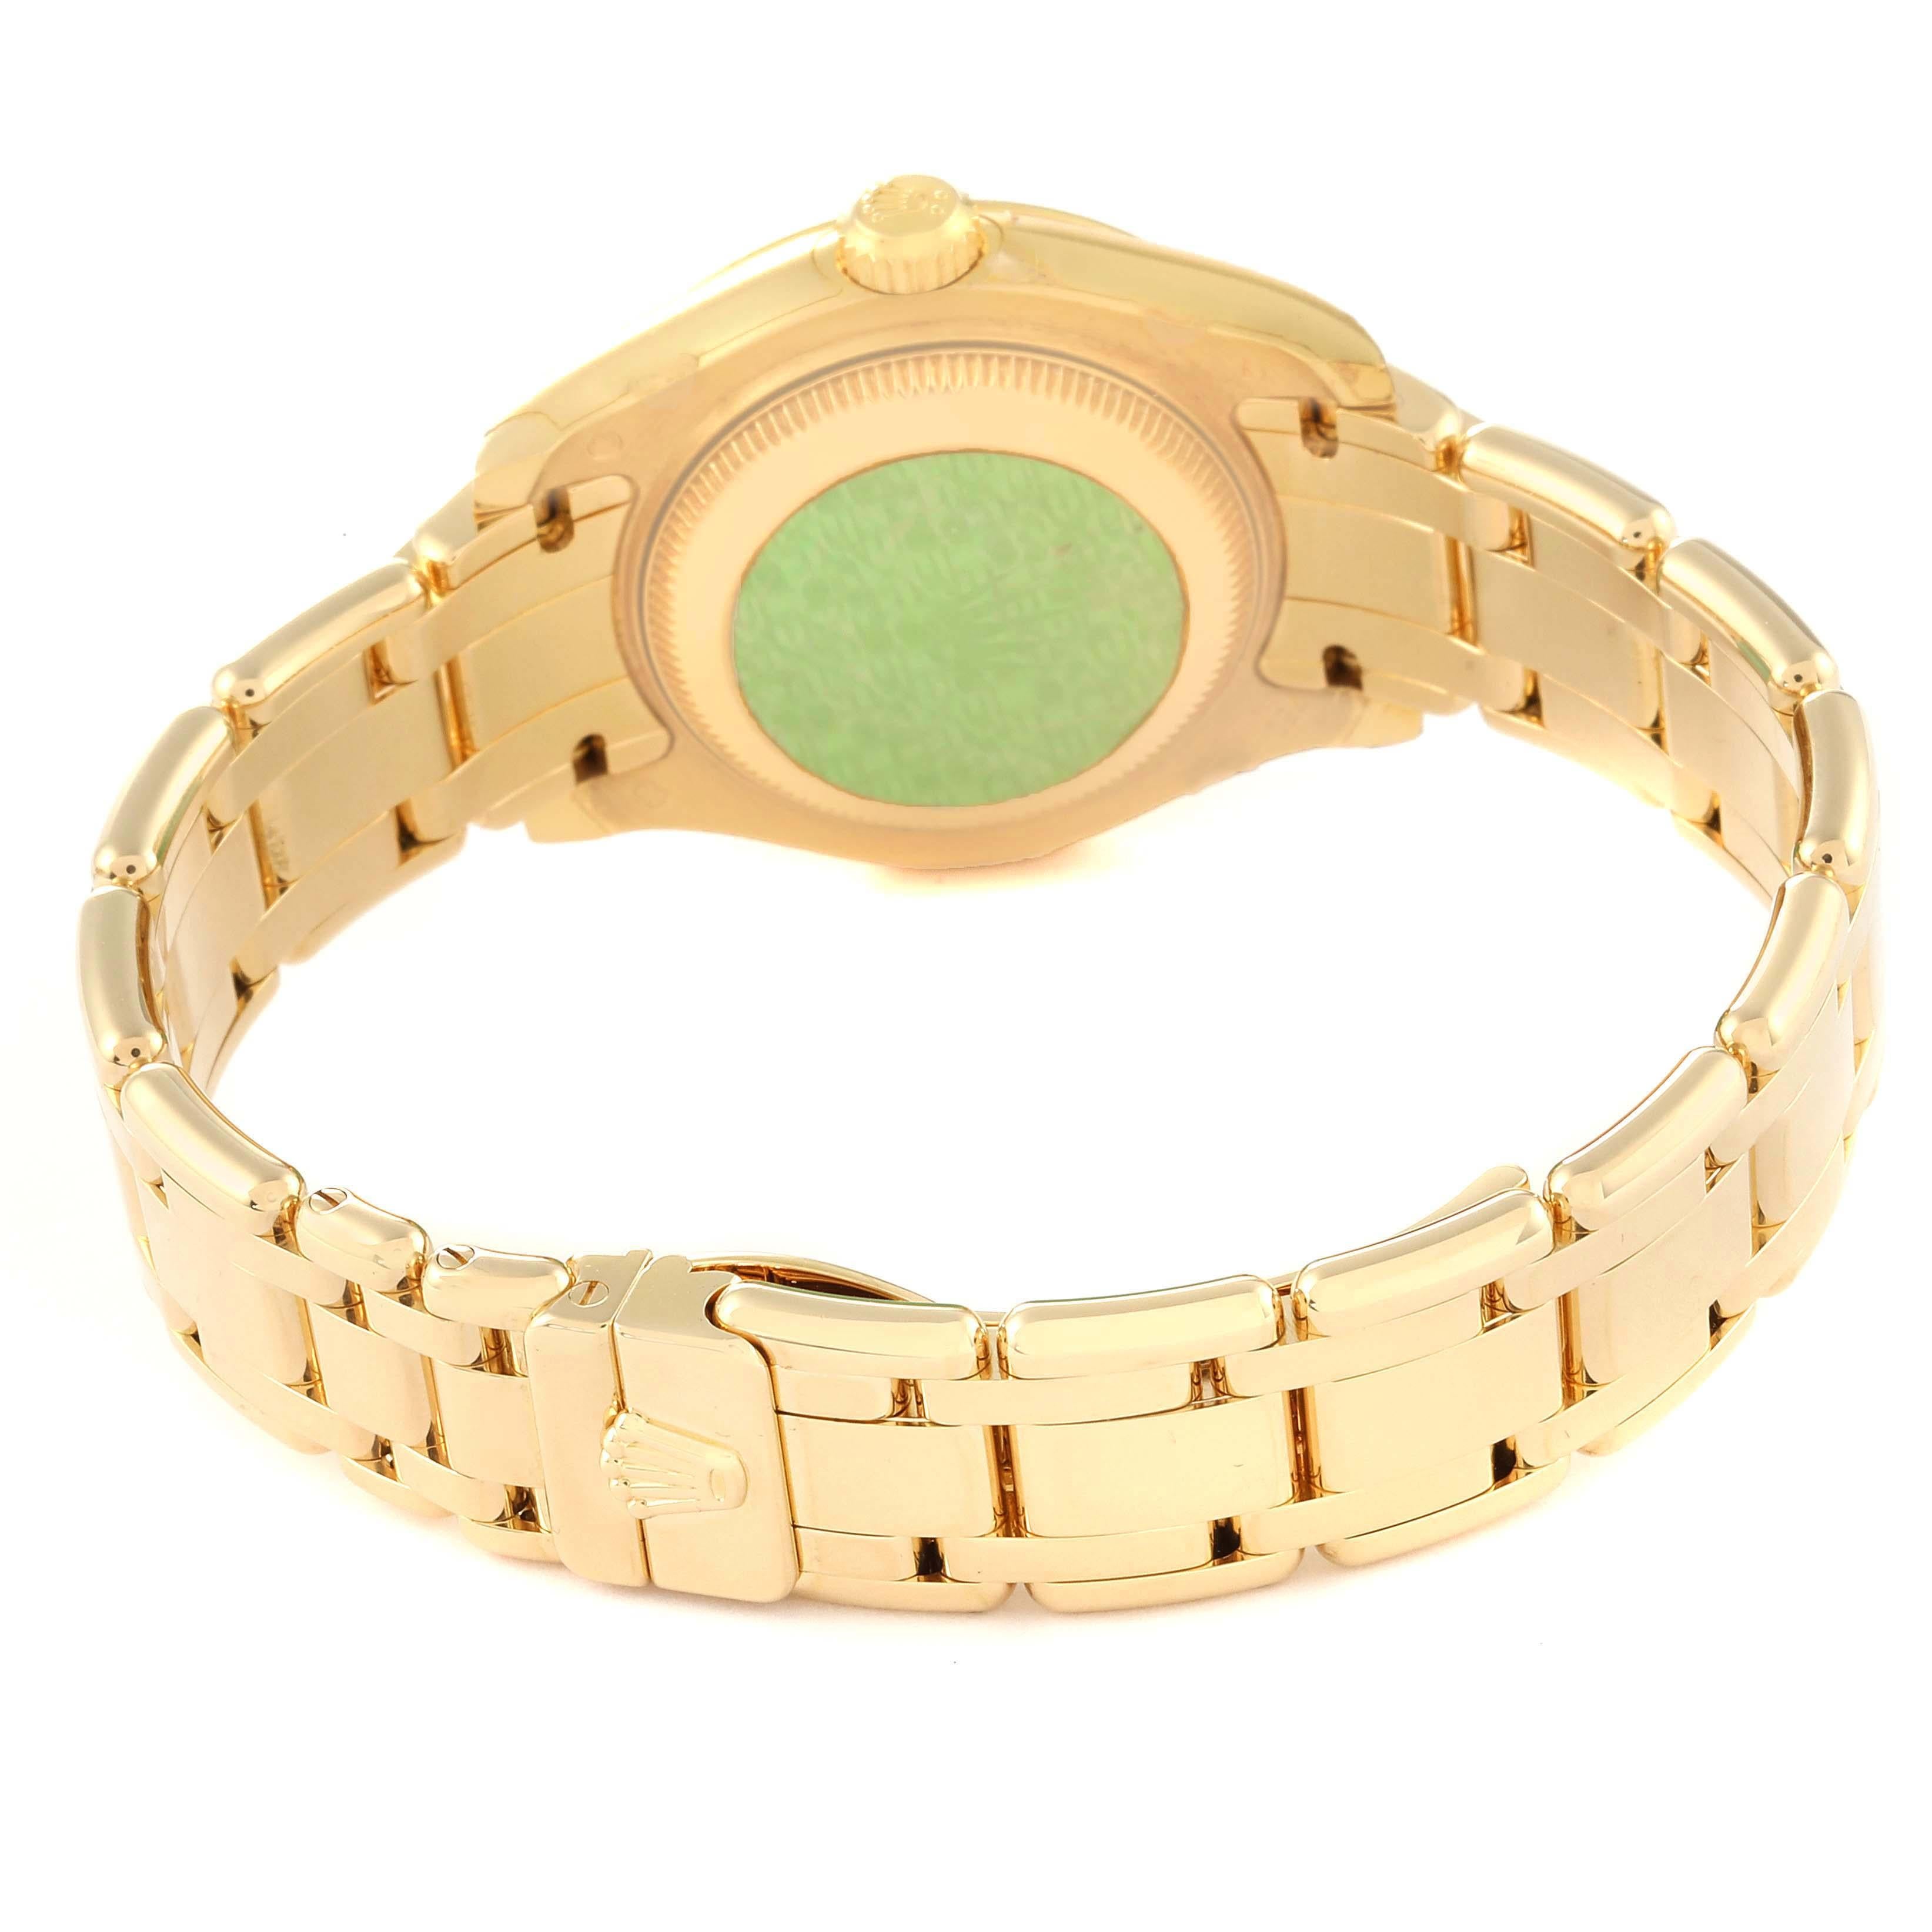 Rolex Pearlmaster Yellow Gold Diamond Ladies Watch 80298 Unworn NOS 4